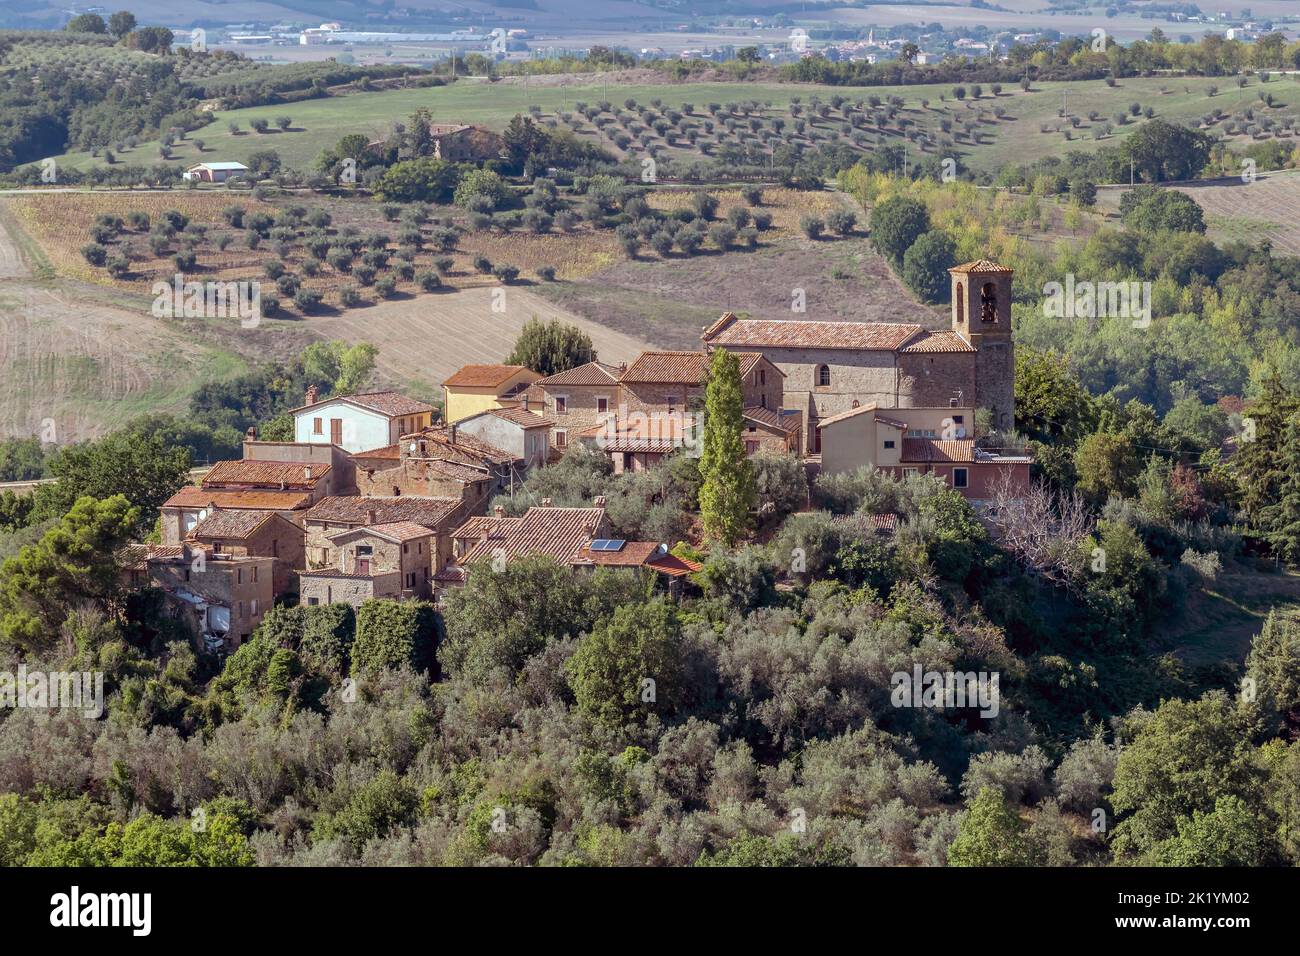 Vista panorámica del antiguo pueblo de Casalalta, Perugia, Italia y la naturaleza circundante Foto de stock